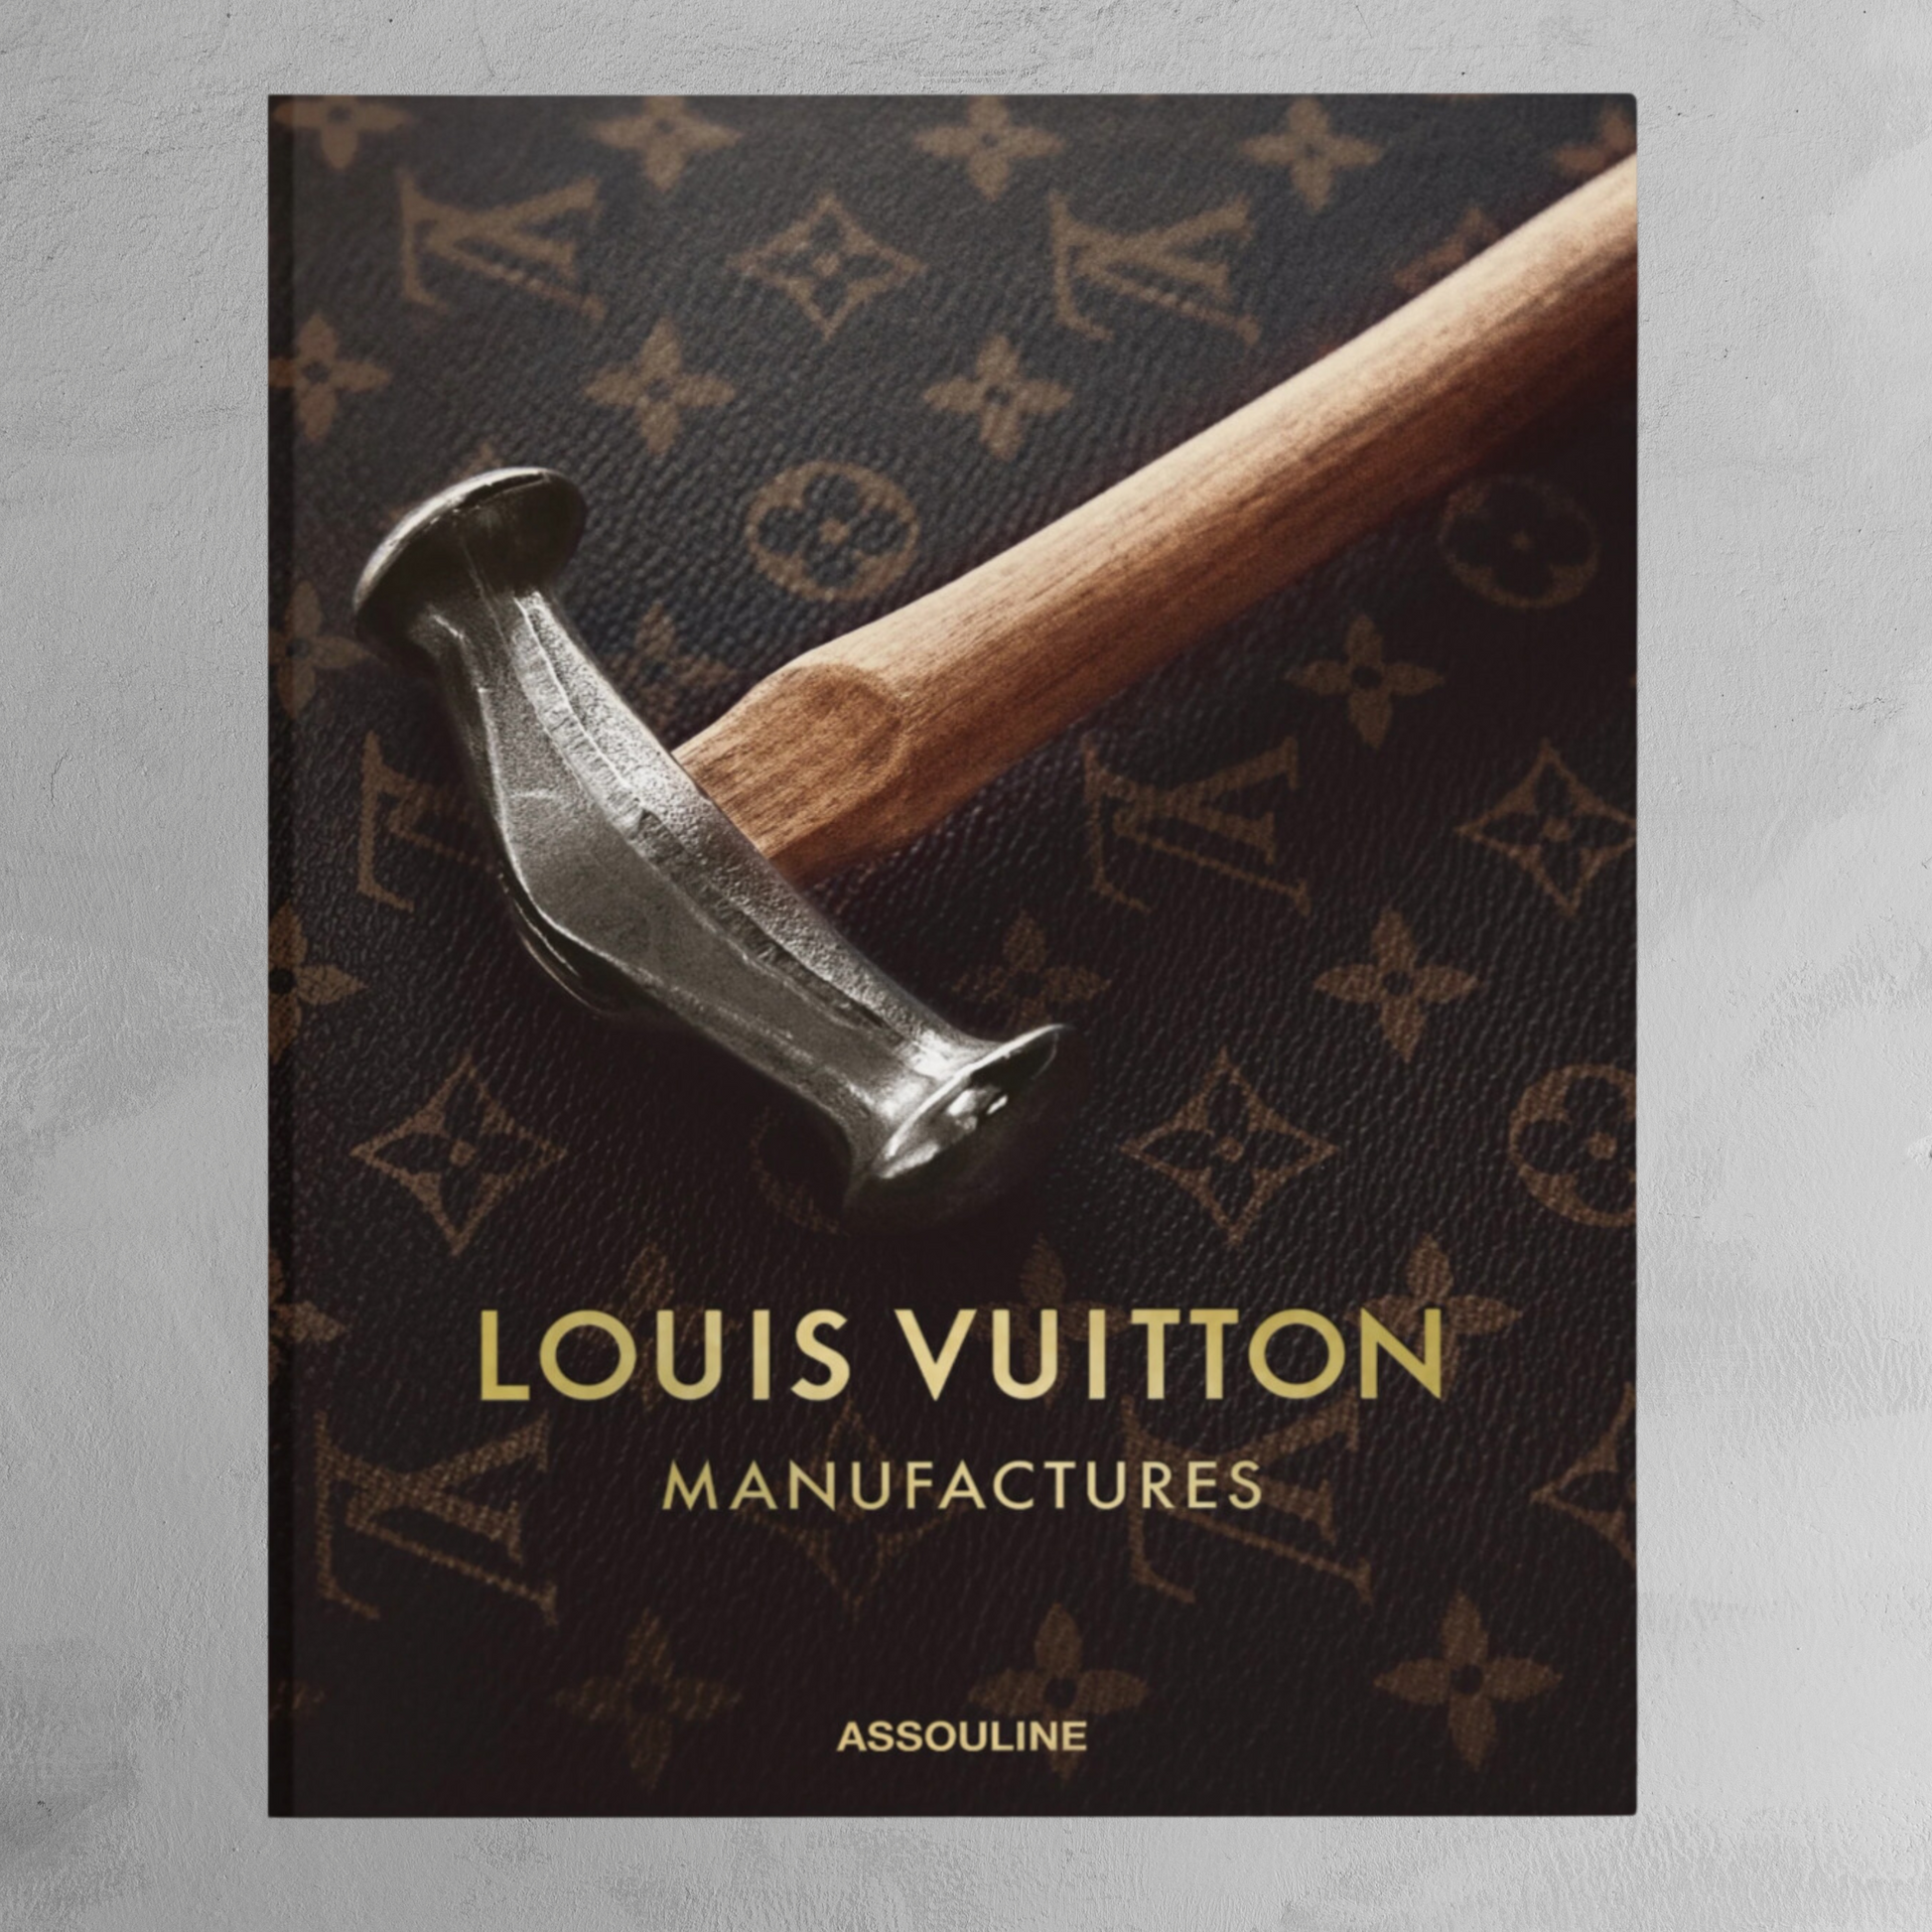 Inside the Louis Vuitton atelier